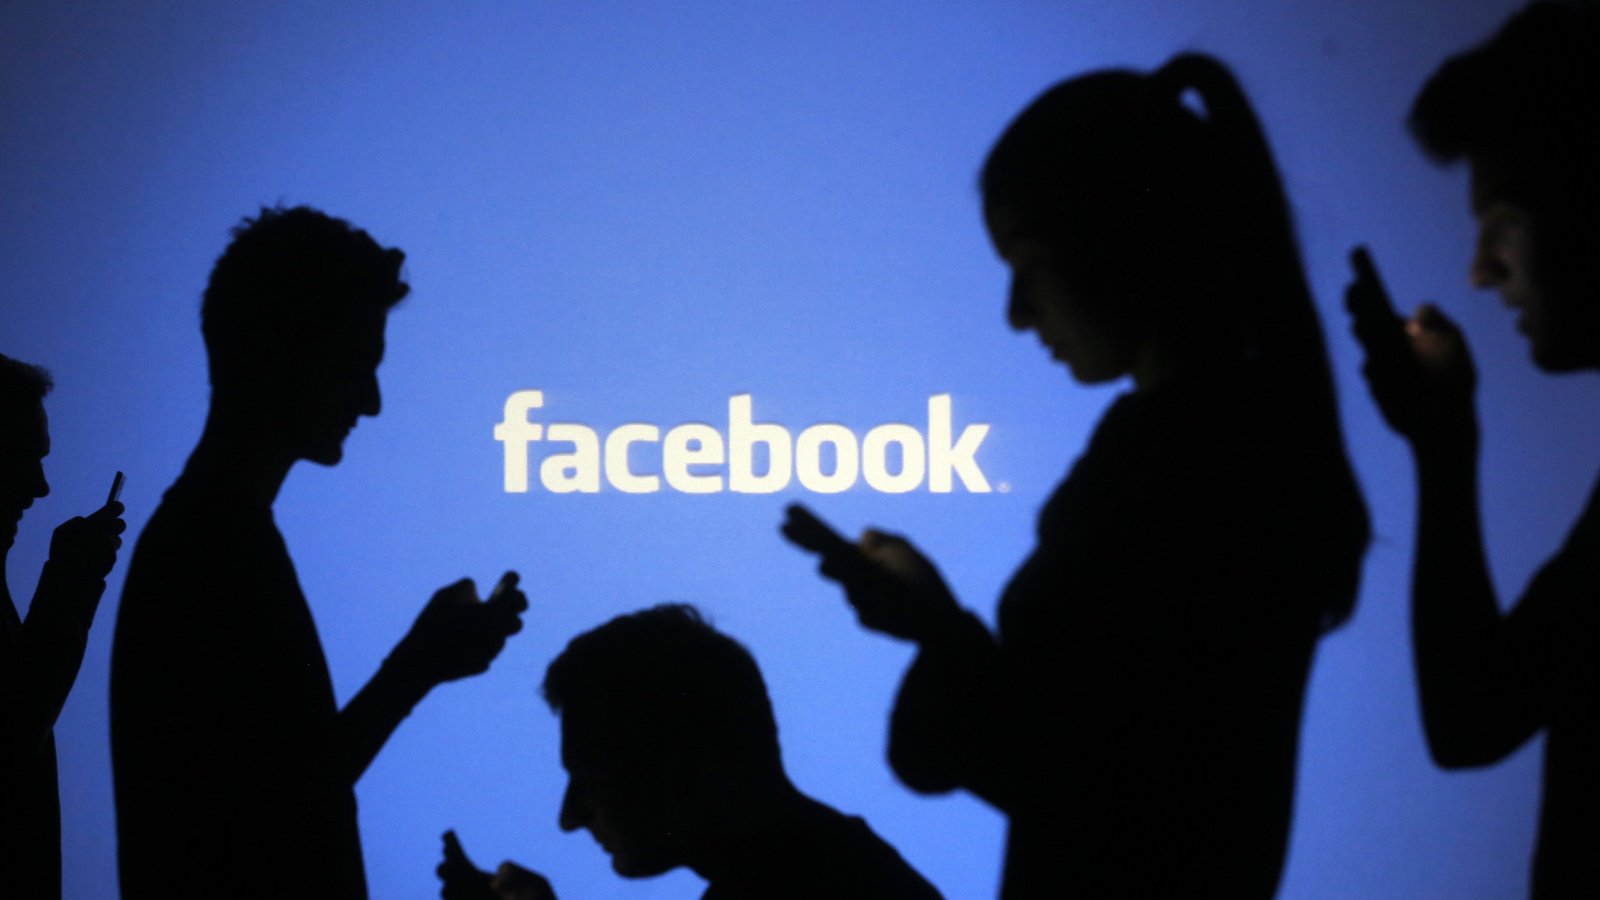 Facebook bị khiếu nại vì phân biệt chủng tộc trong môi trường làm việc